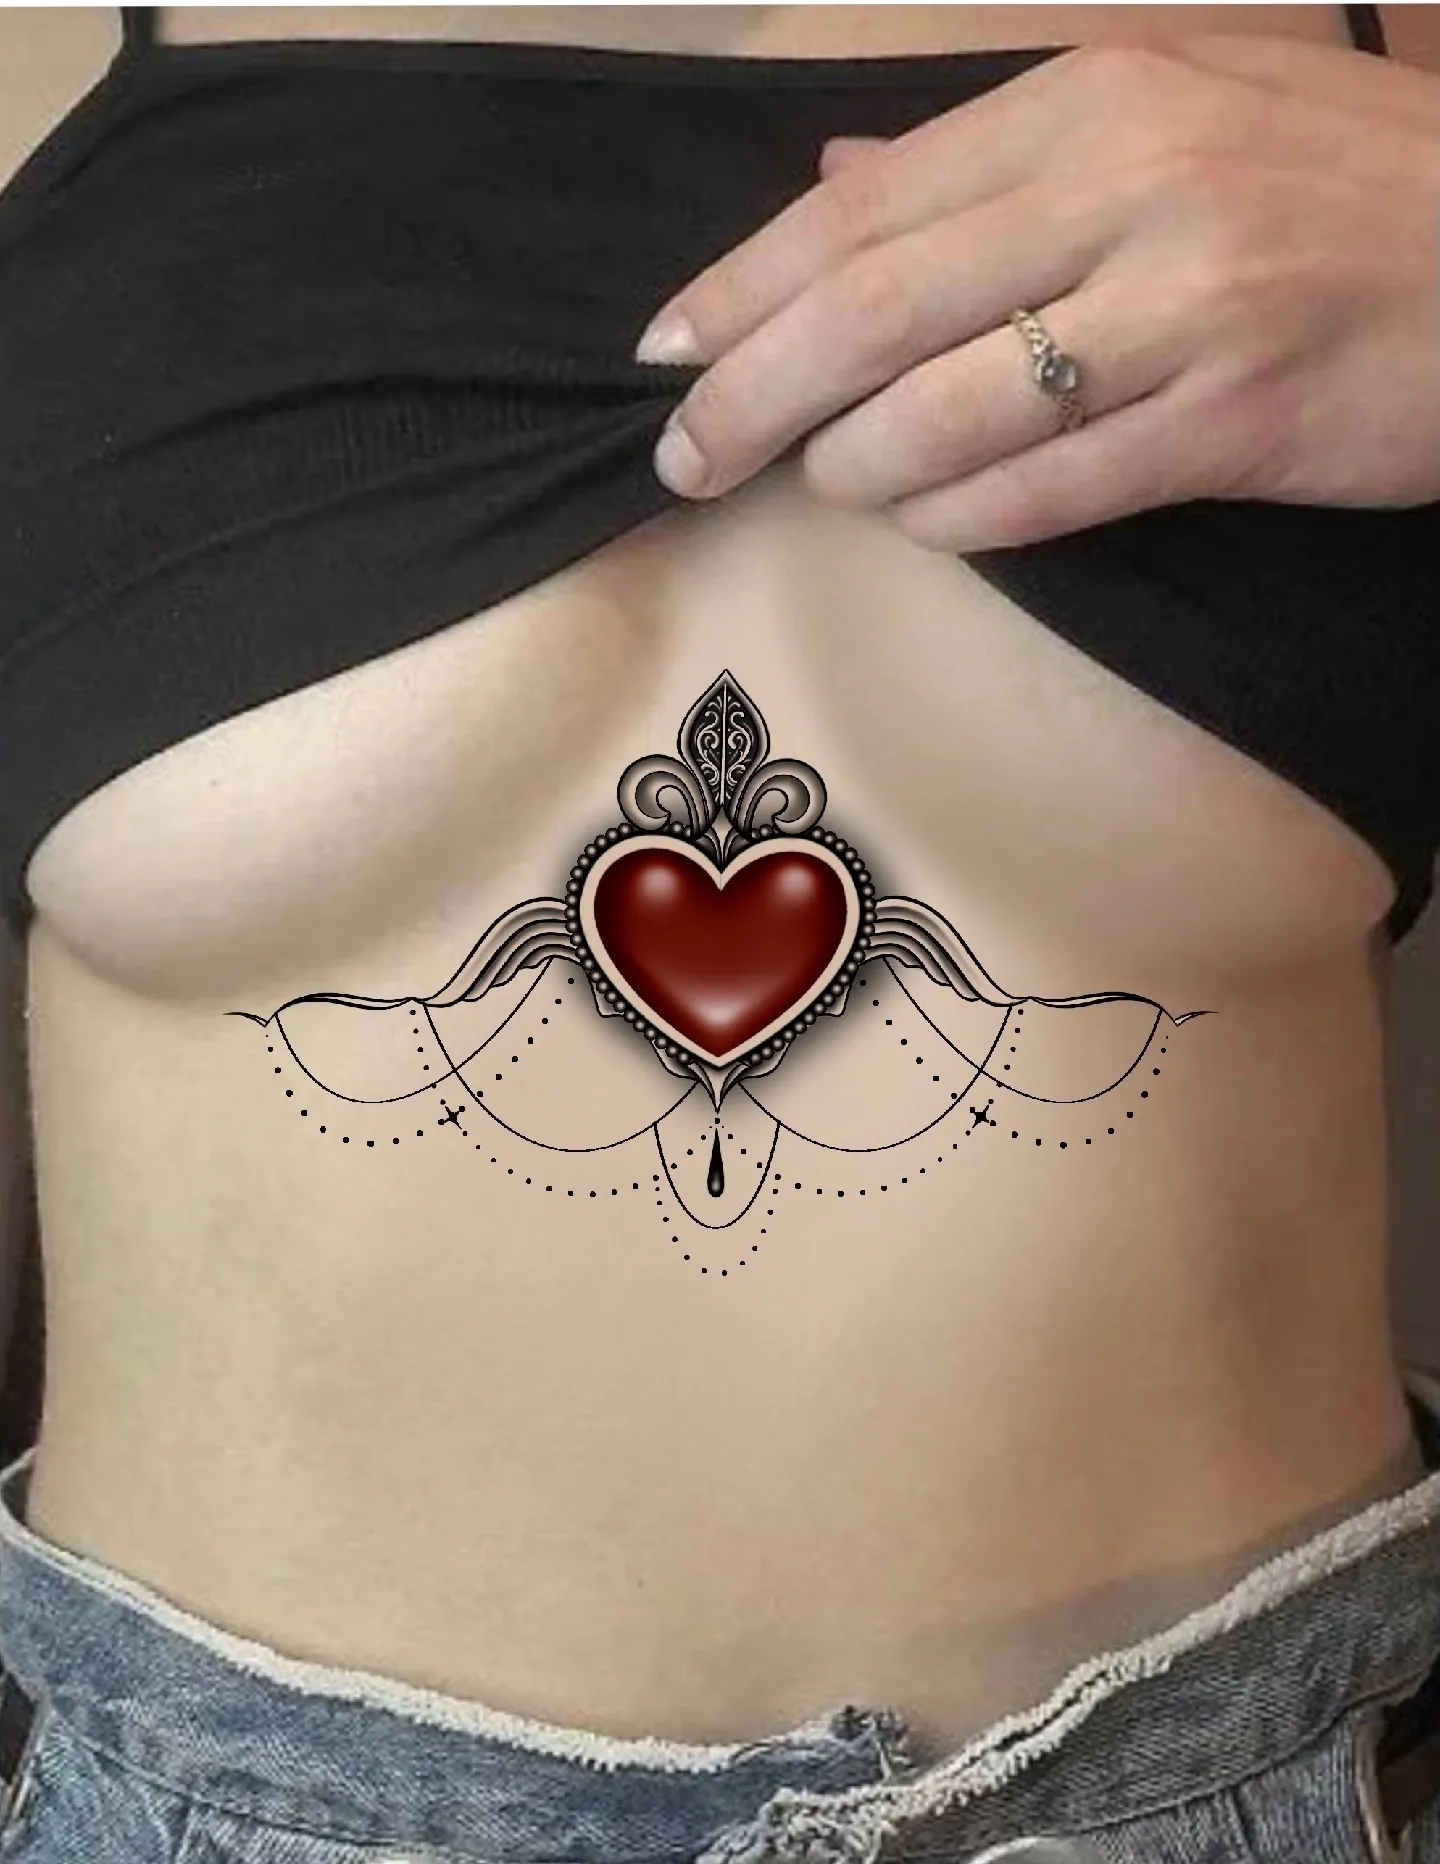 Minimalist red heart tattoo on the breast.